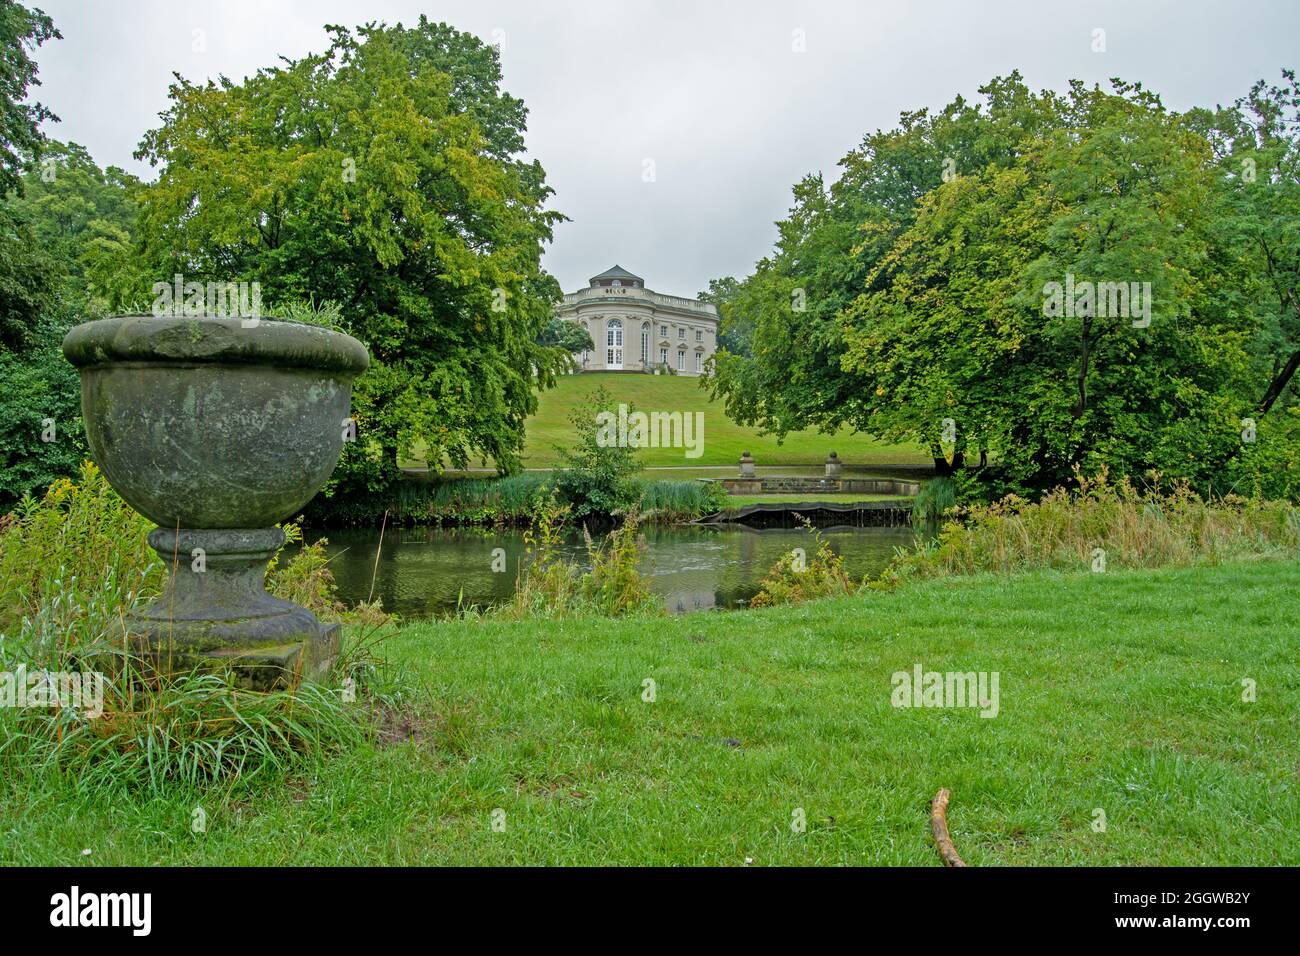 Braunschweig, ,Parkanlage alter Schiffsanleger in der Ferne das Schloss Richmond,der Fluss (Oker) als Bild Mitte Ein Steinblumentopf im Vordergrund Stock Photo